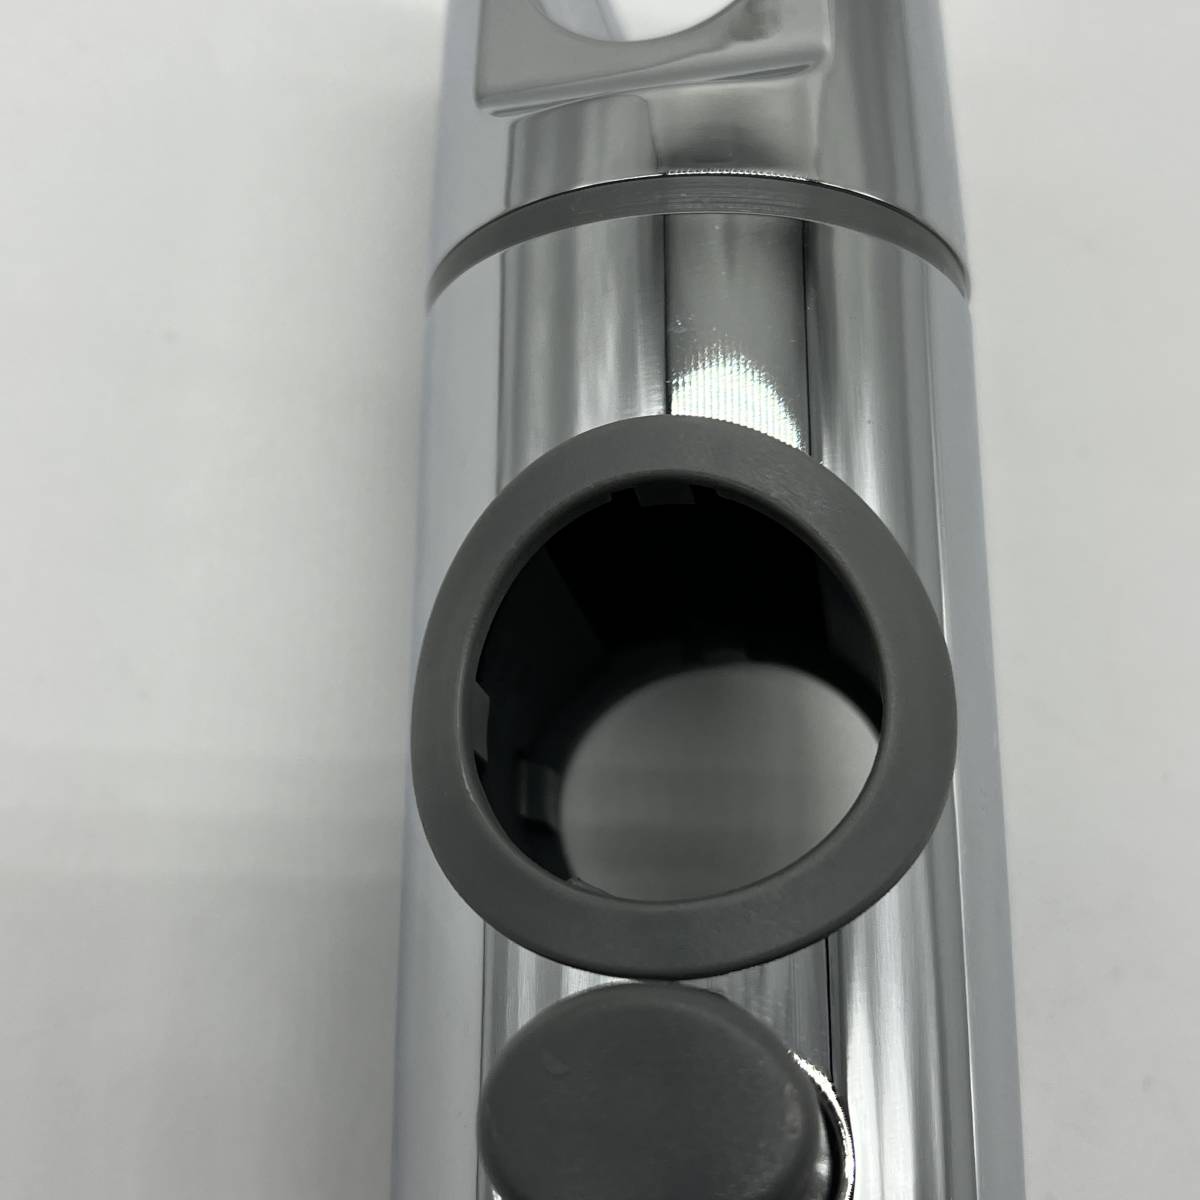 シャワーフック スライドバー AKI2079 交換方法 角度 360度回転 修理交換用 互換 リクシル イナックス トステム (28mm)_画像2